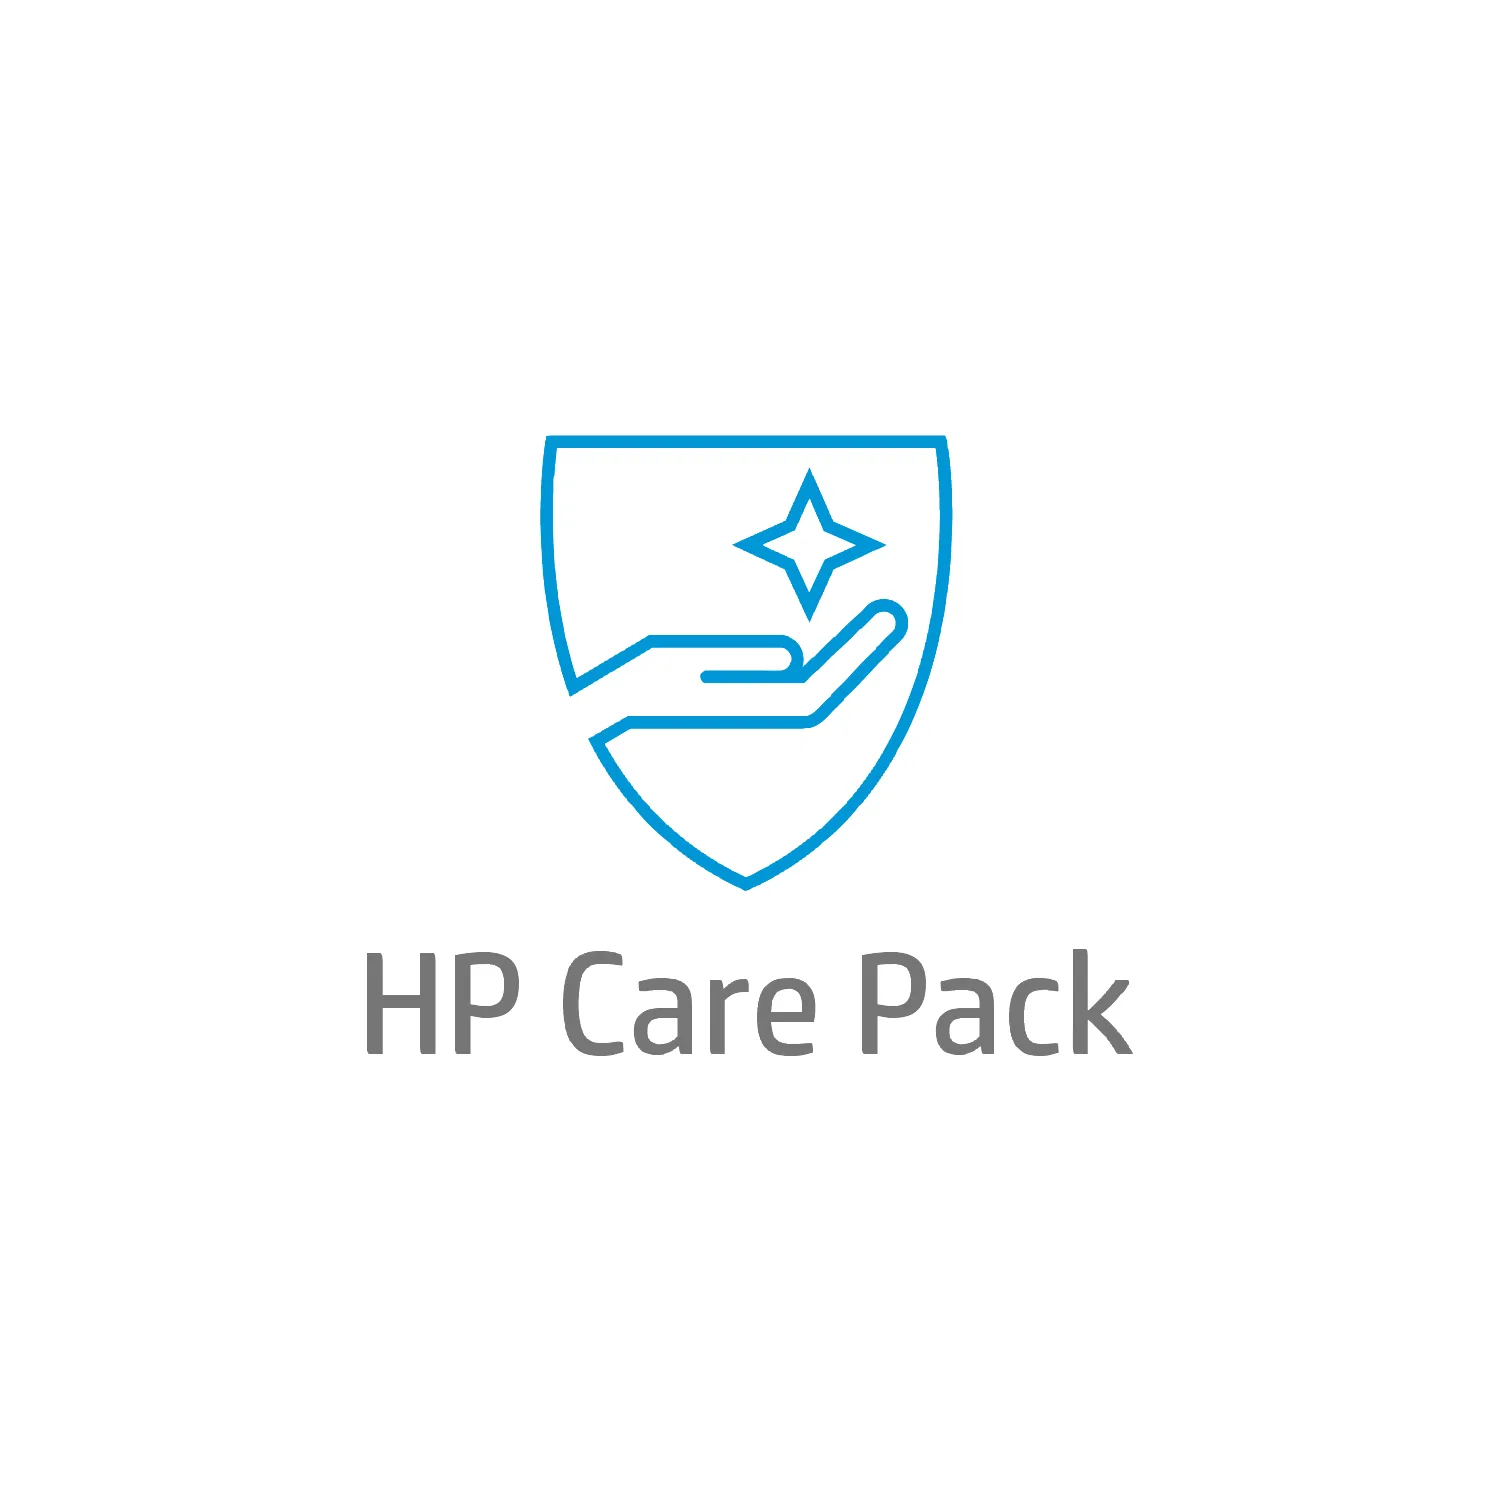 Vente Service HP de maintenance préventive sur site pendant HP au meilleur prix - visuel 2